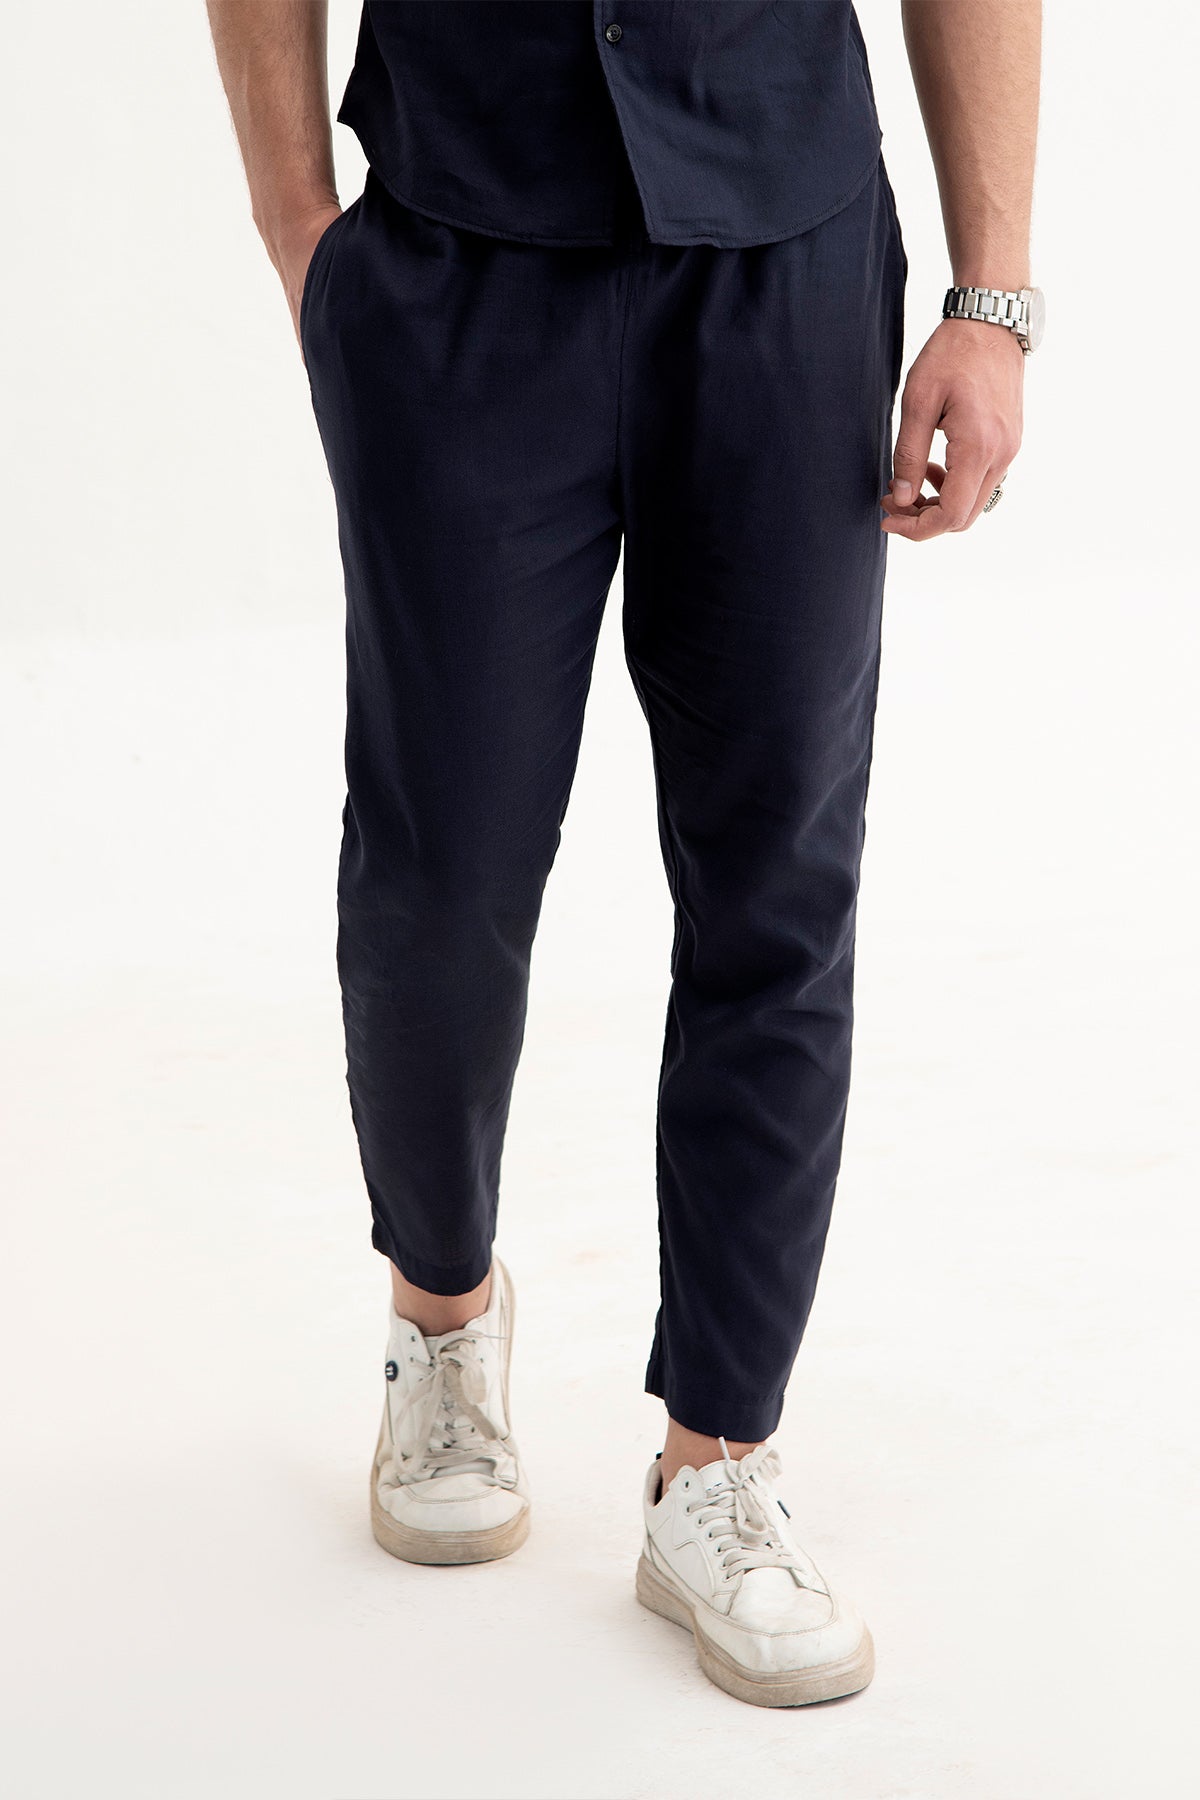 Navy Blue Irish Linen trouser